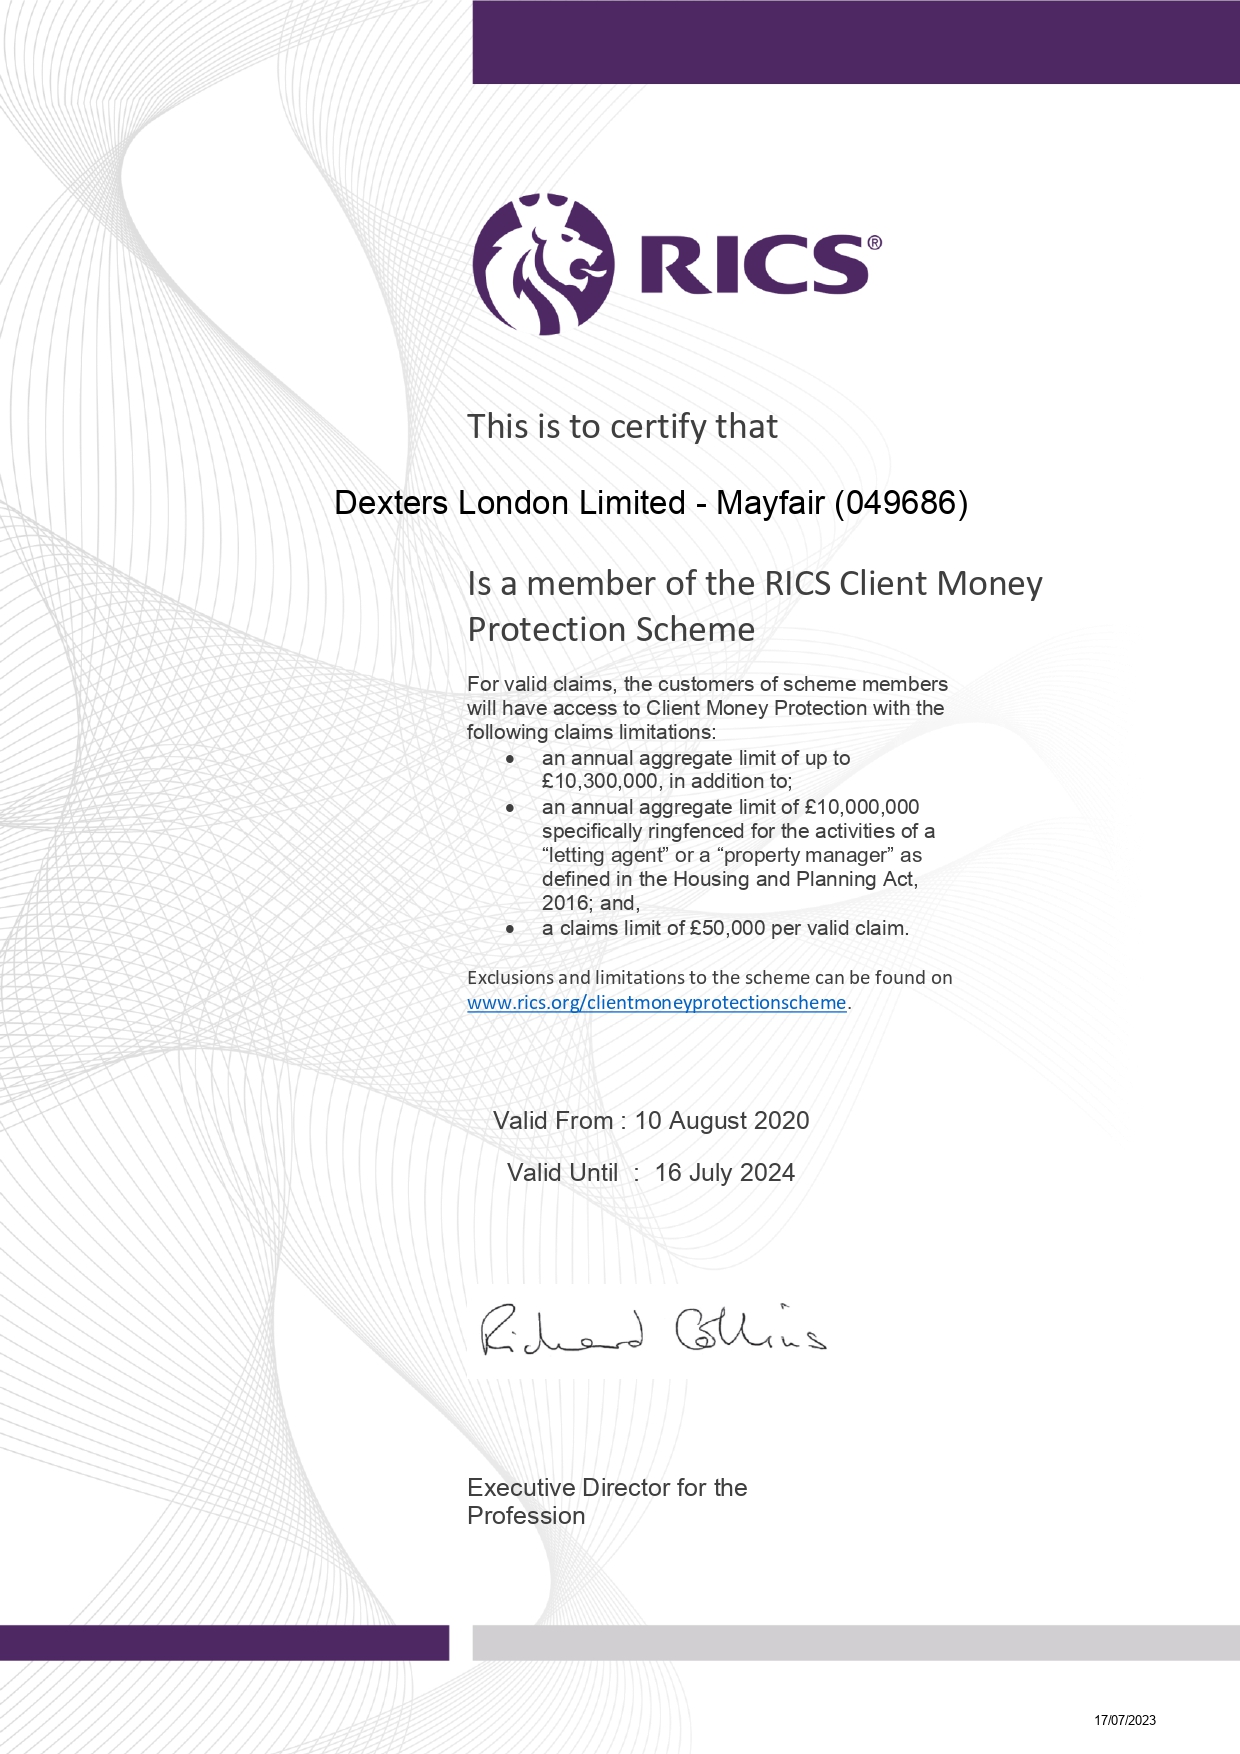 Dexters London Limited RICS Client Money Protection Certificate